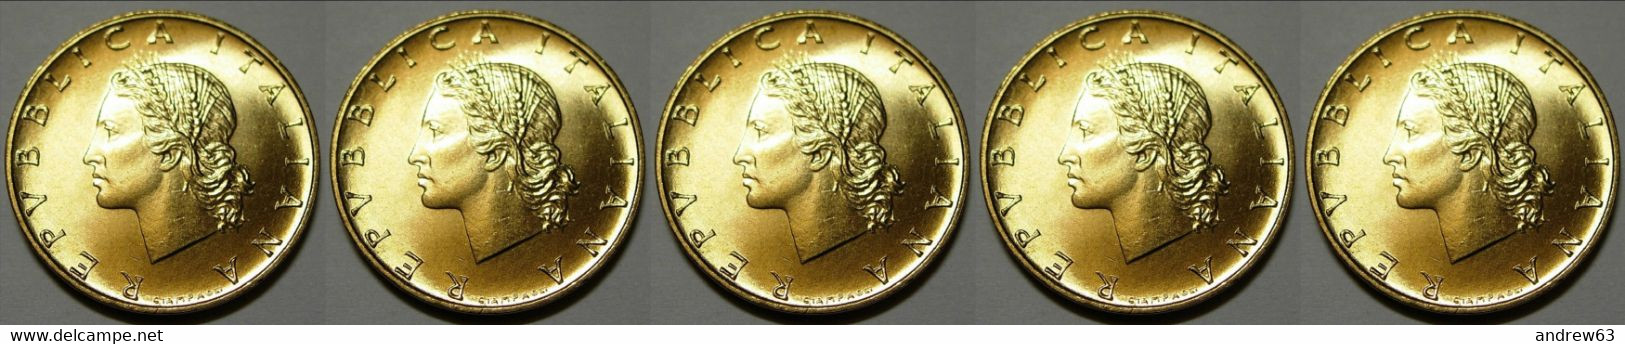 ITALIA - Lire 20 1989 - FDC/Unc Da Rotolino/from Roll 5 Monete/5 Coins - 20 Liras